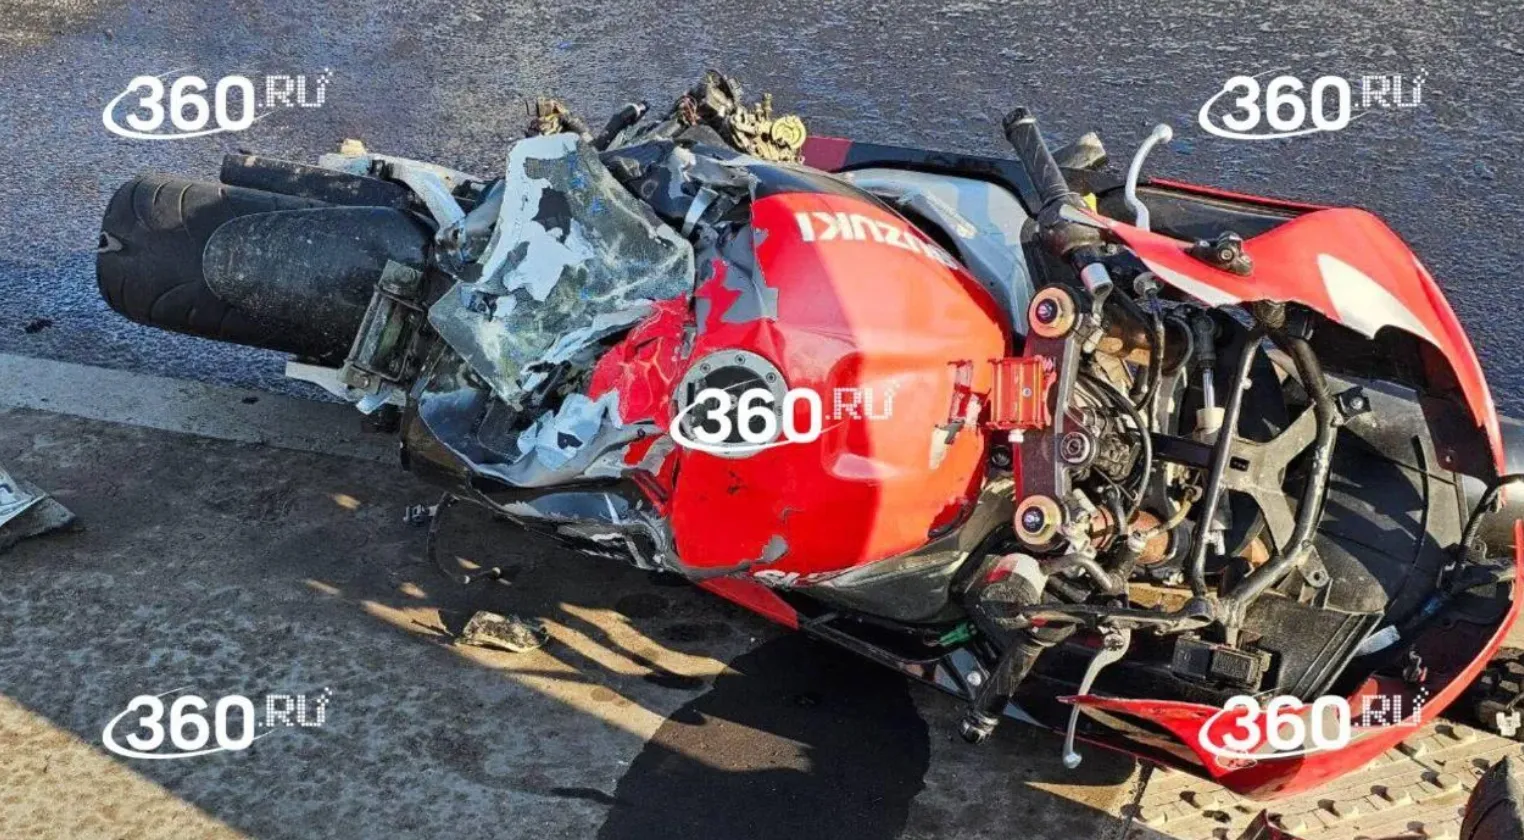 "По кусочкам собирали": Два человека на мотоцикле разбились насмерть о столб в Москве